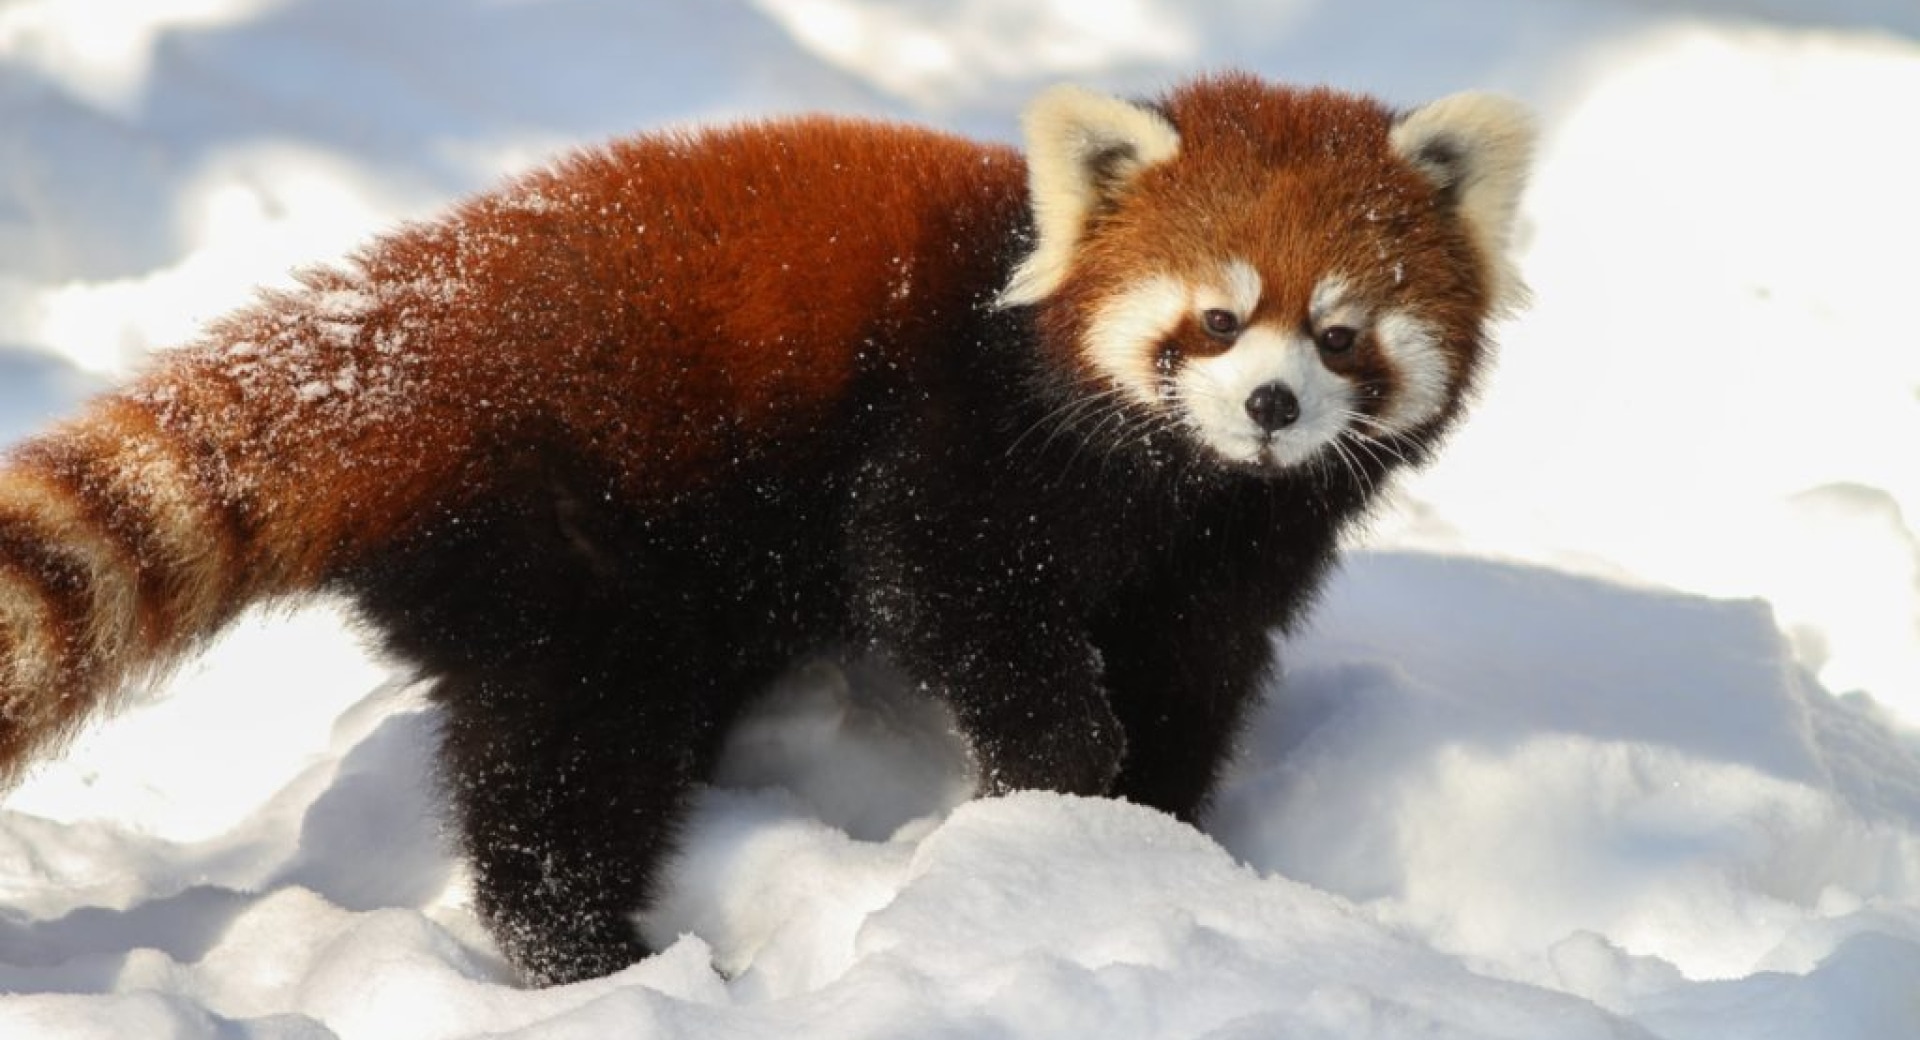 5 Reasons We Should Save the Red Panda this Holiday Season